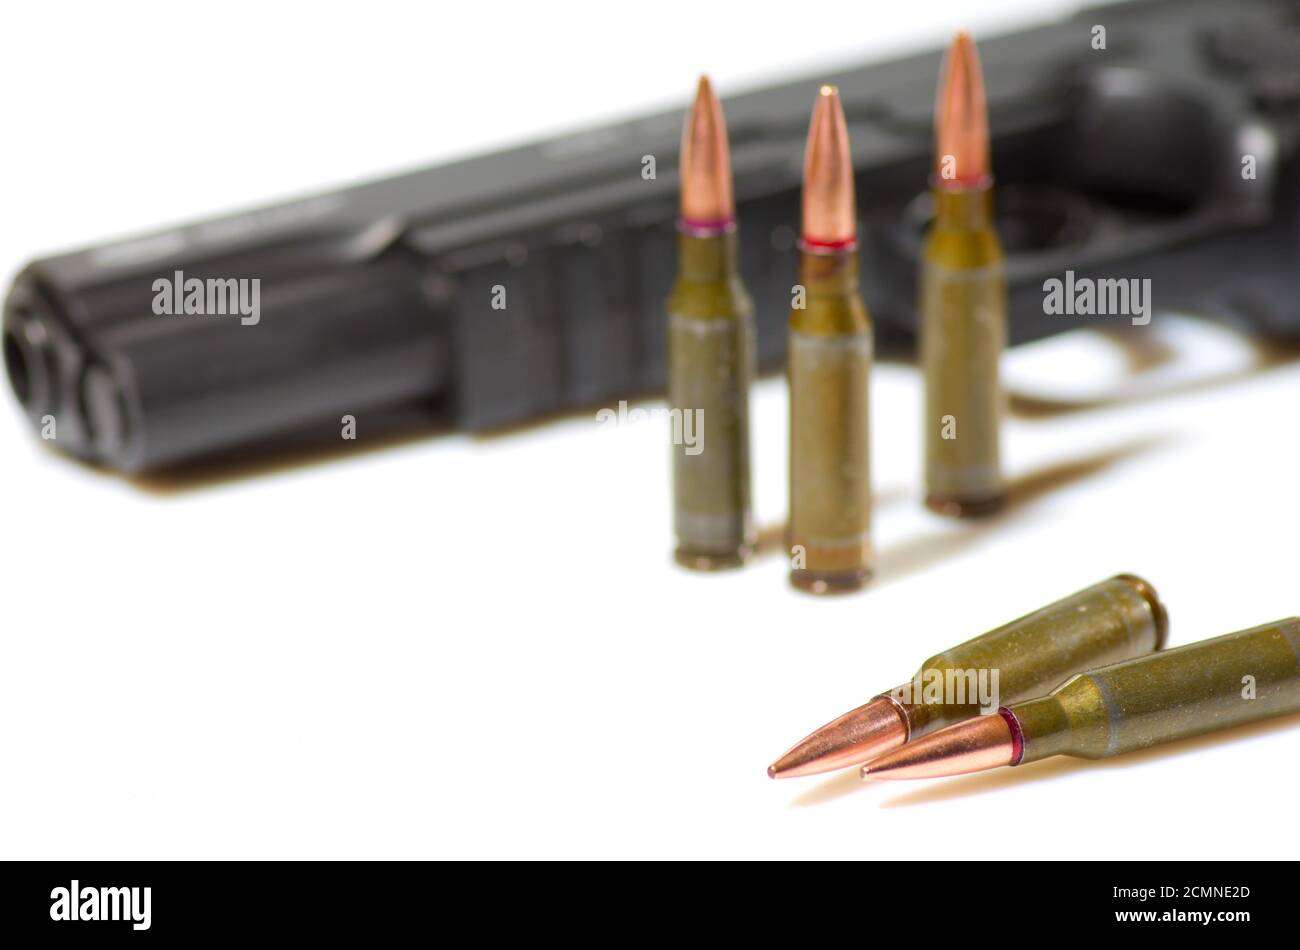 Ammunition cartridges on white background Stock Photo